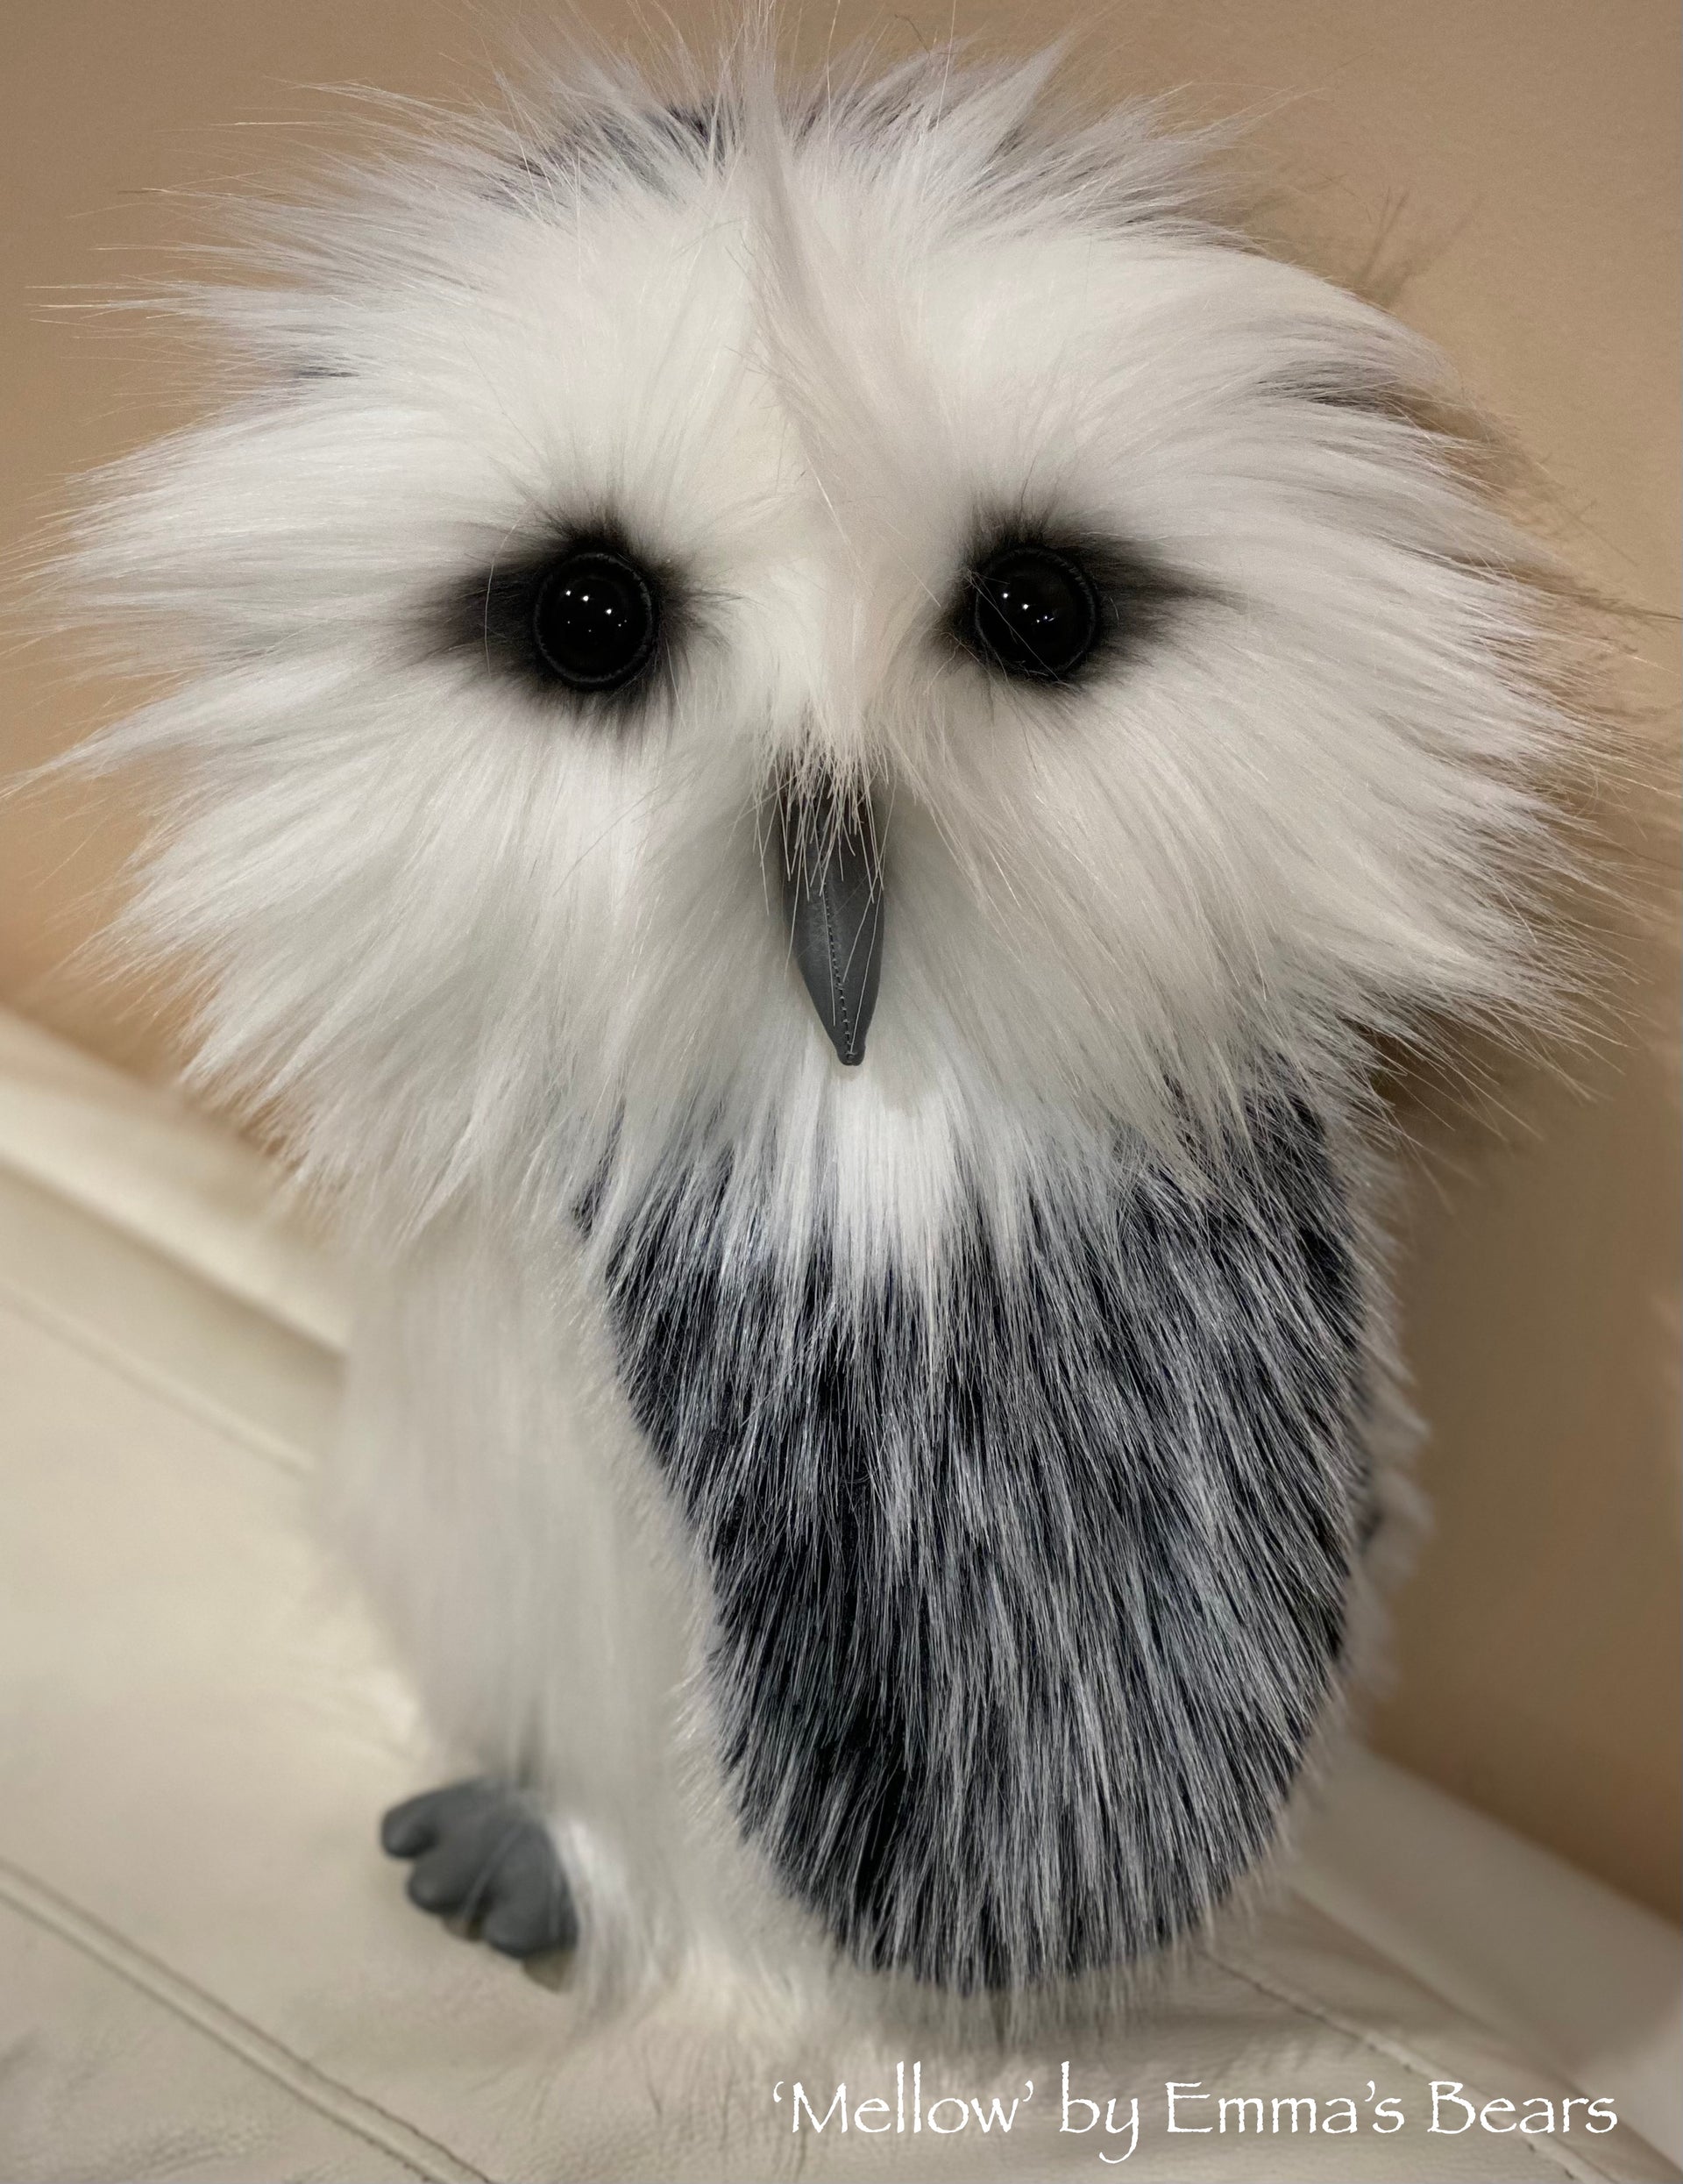 Mellow - 13" faux fur Artist OWL Bear by Emmas Bears - OOAK